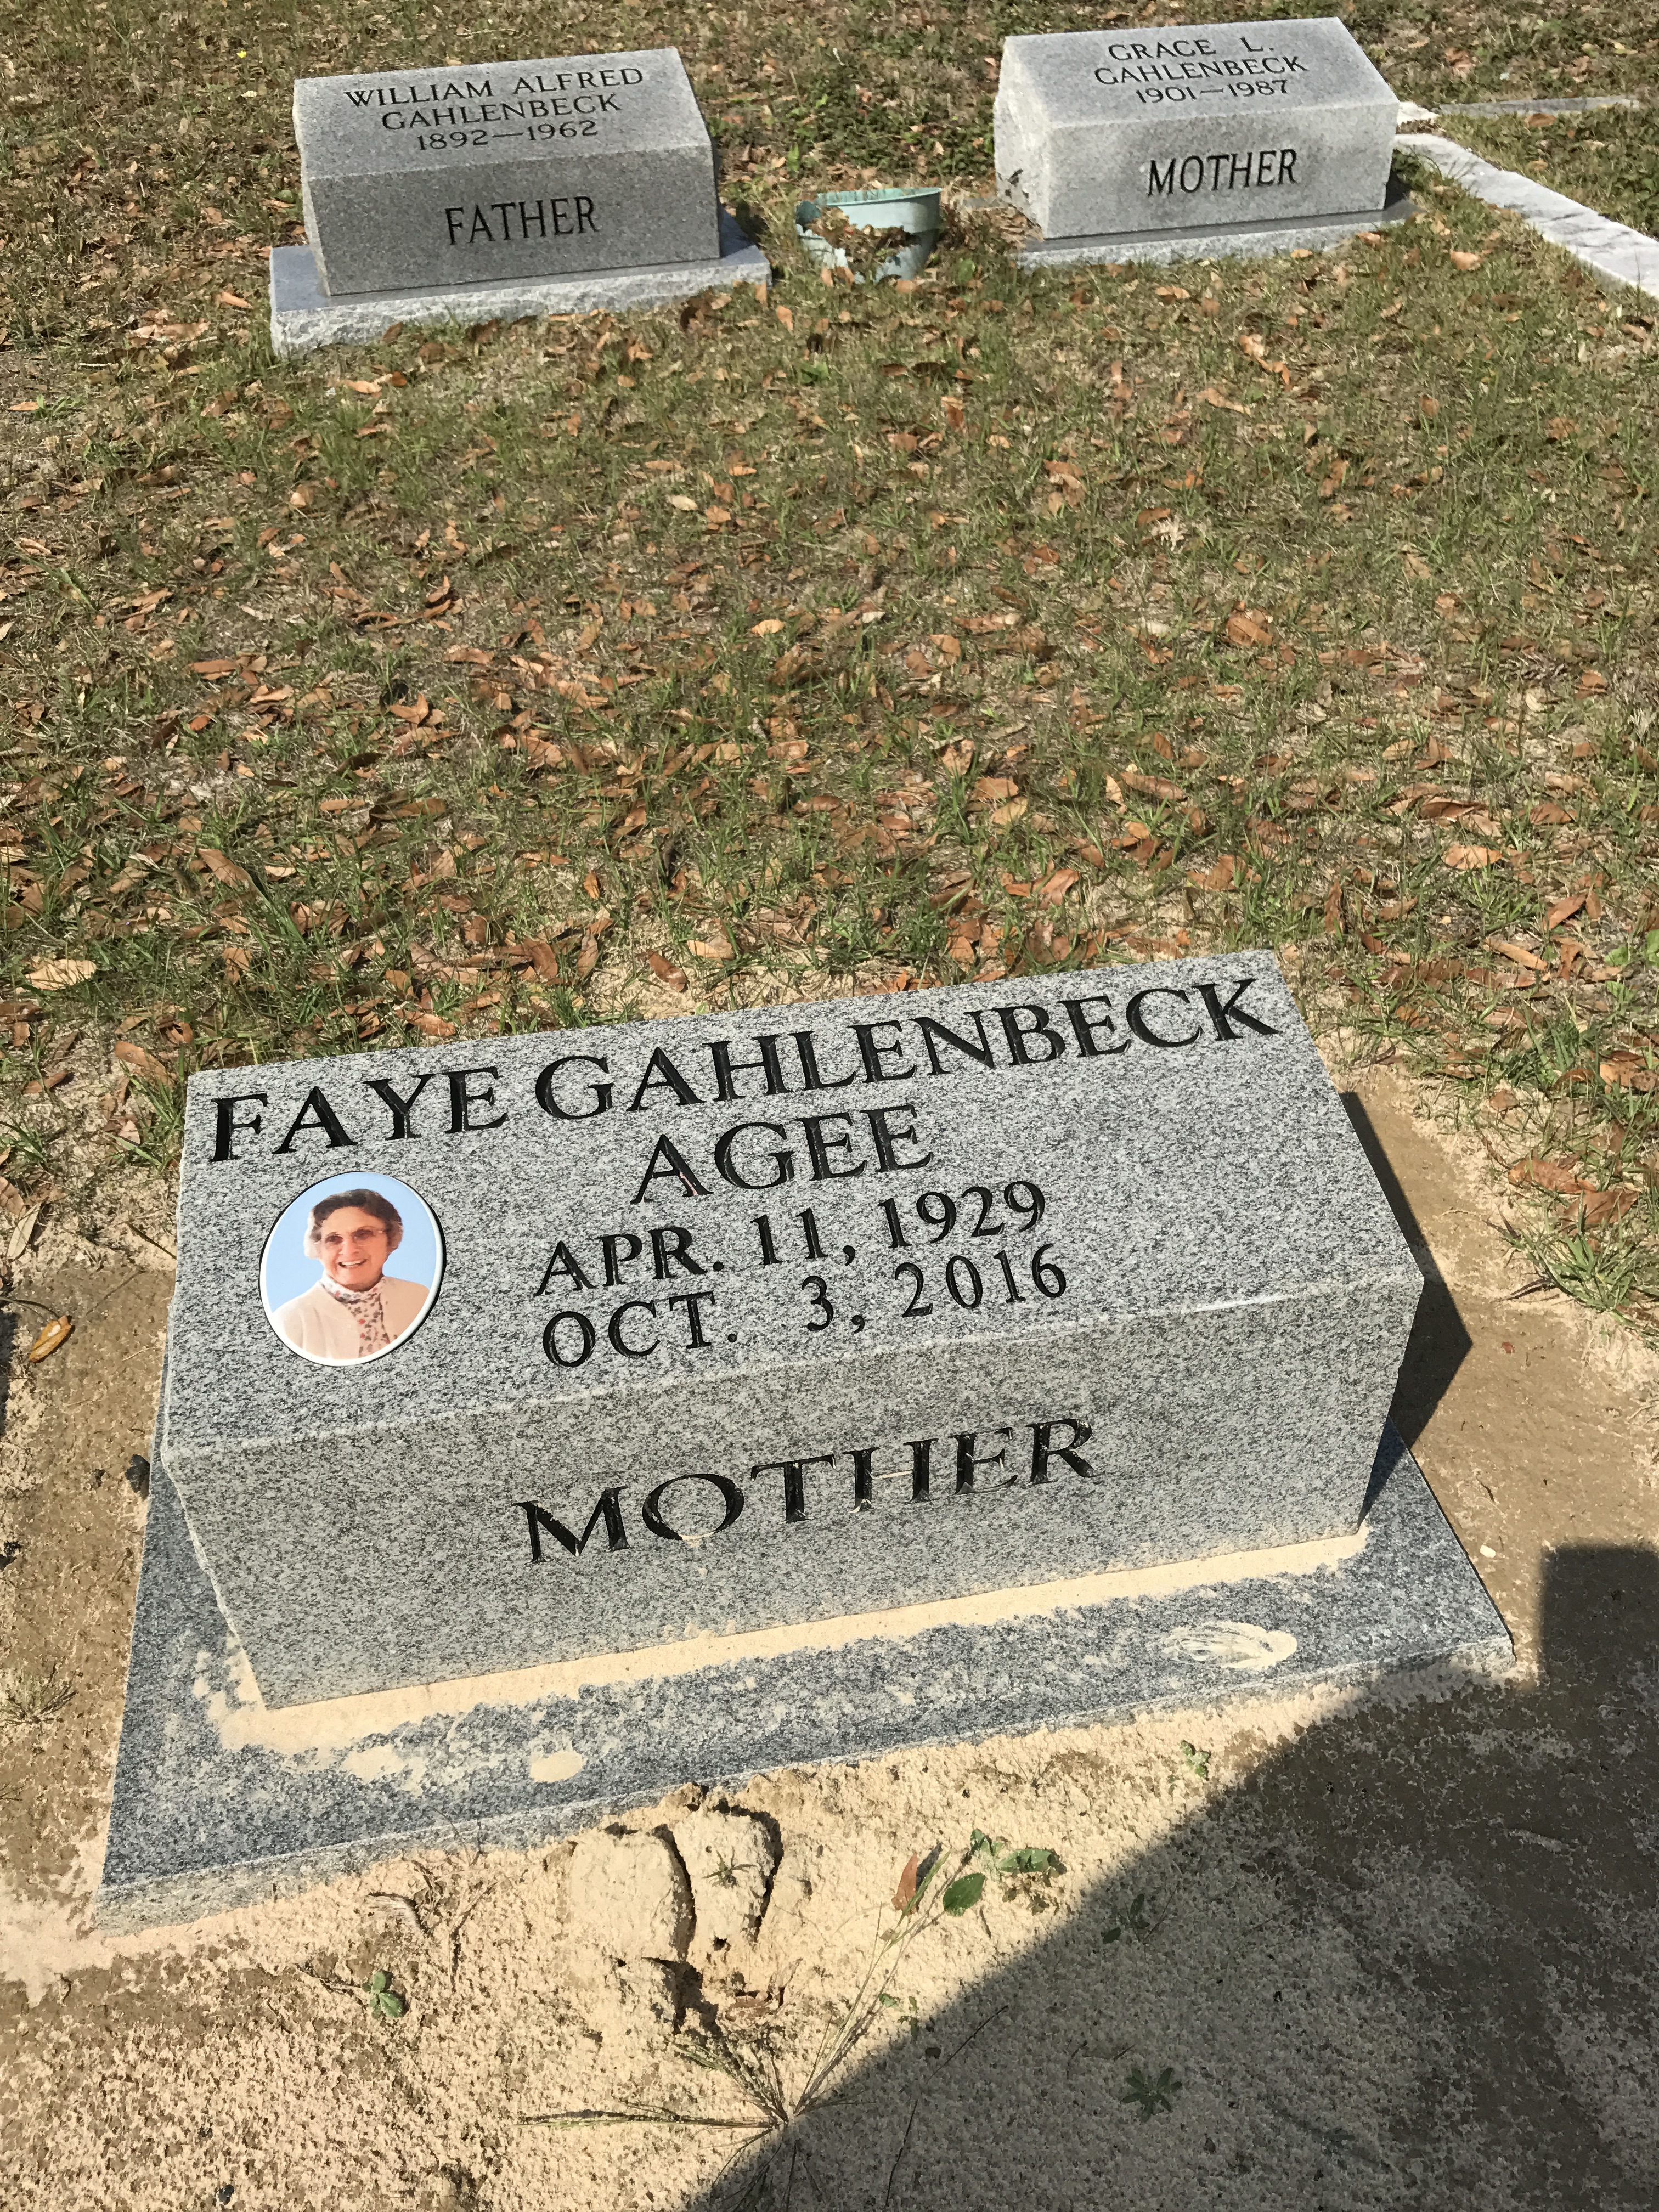 Faye Gahlenbeck Agee